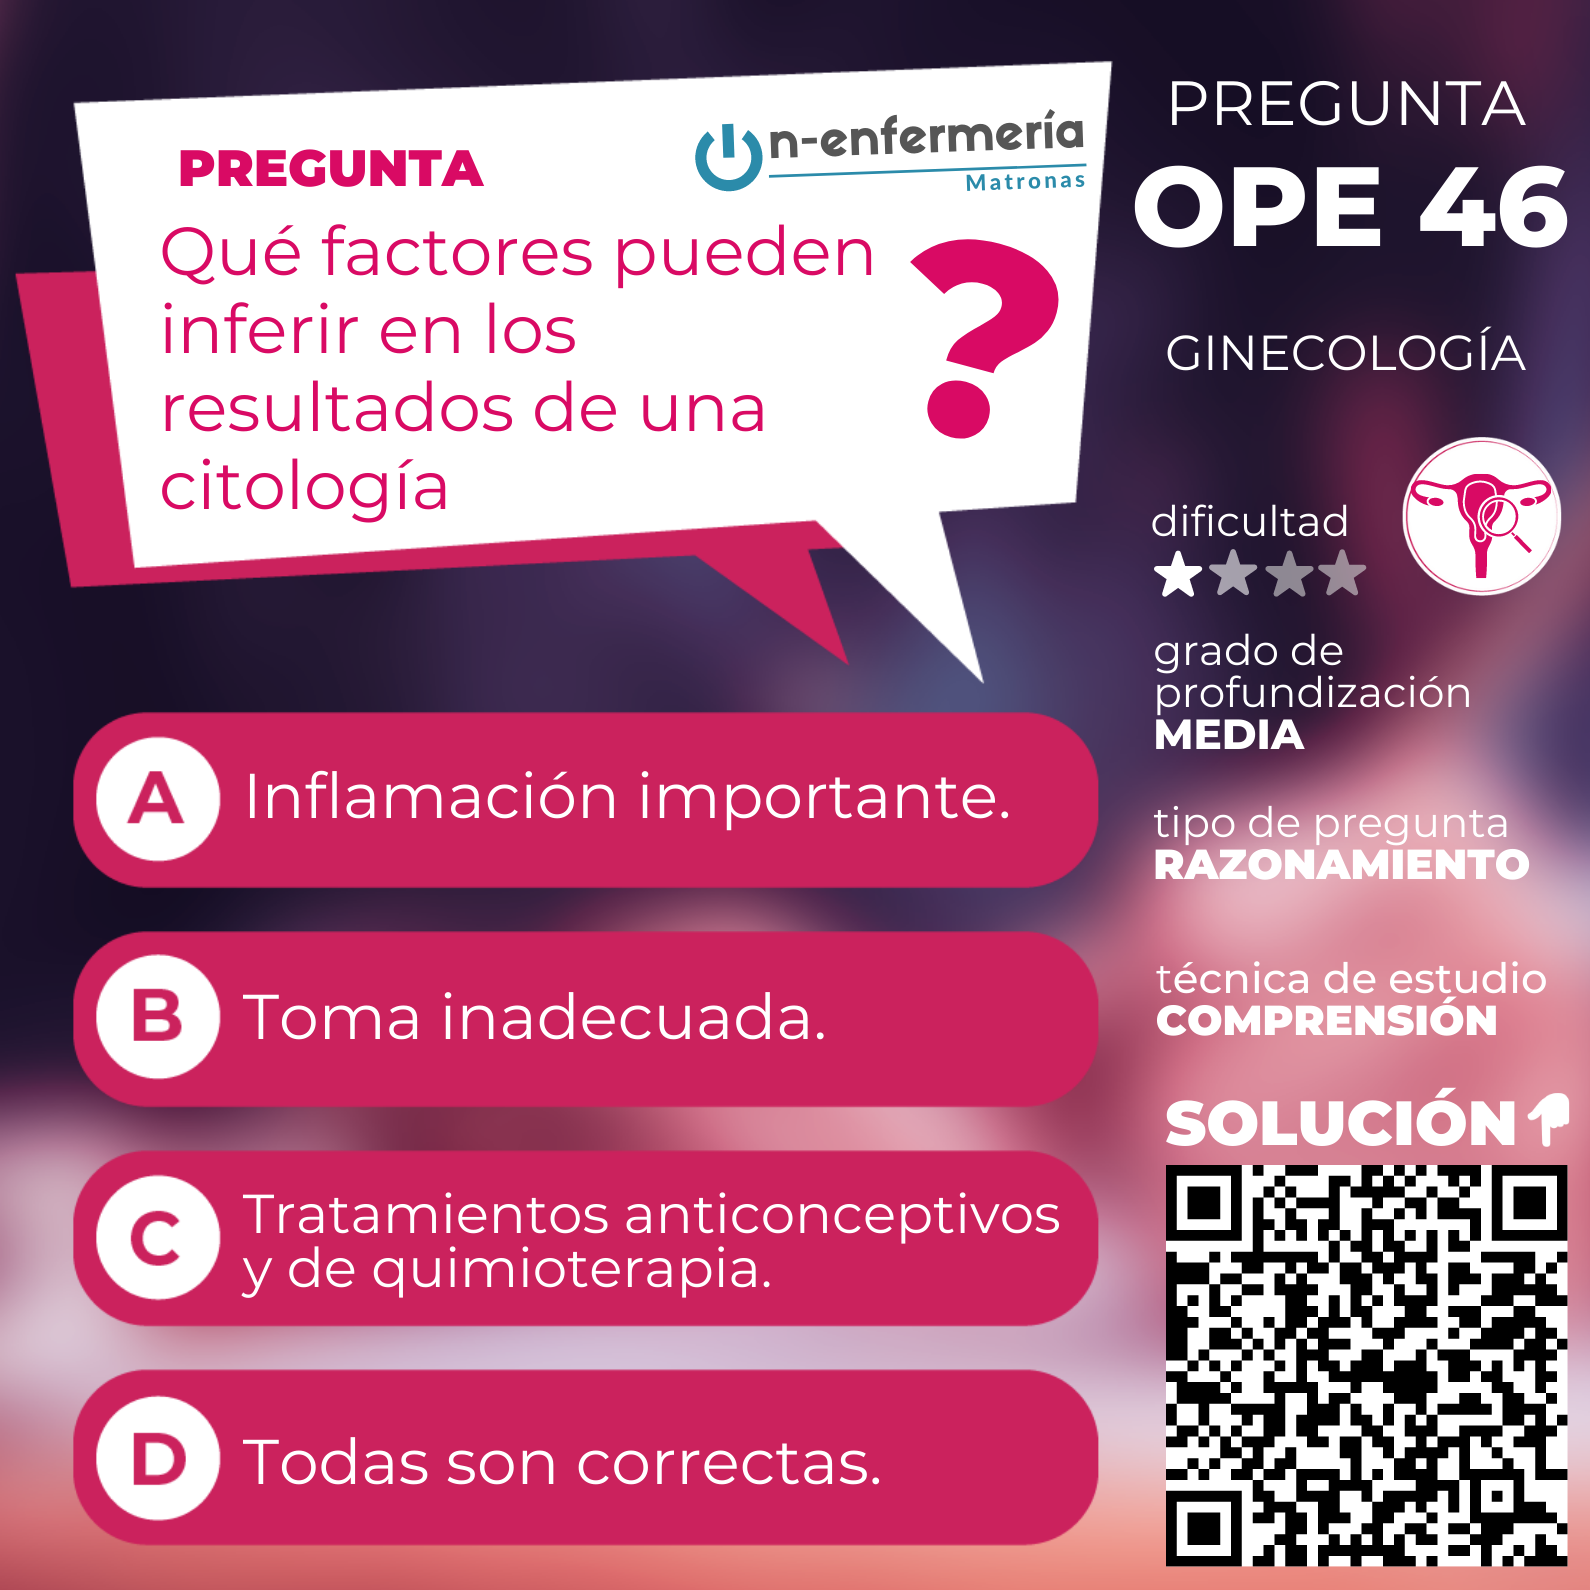 Pregunta examen OPE Matronas nº 46 Ginecología - Cuidados en la salud reproductiva de la mujer